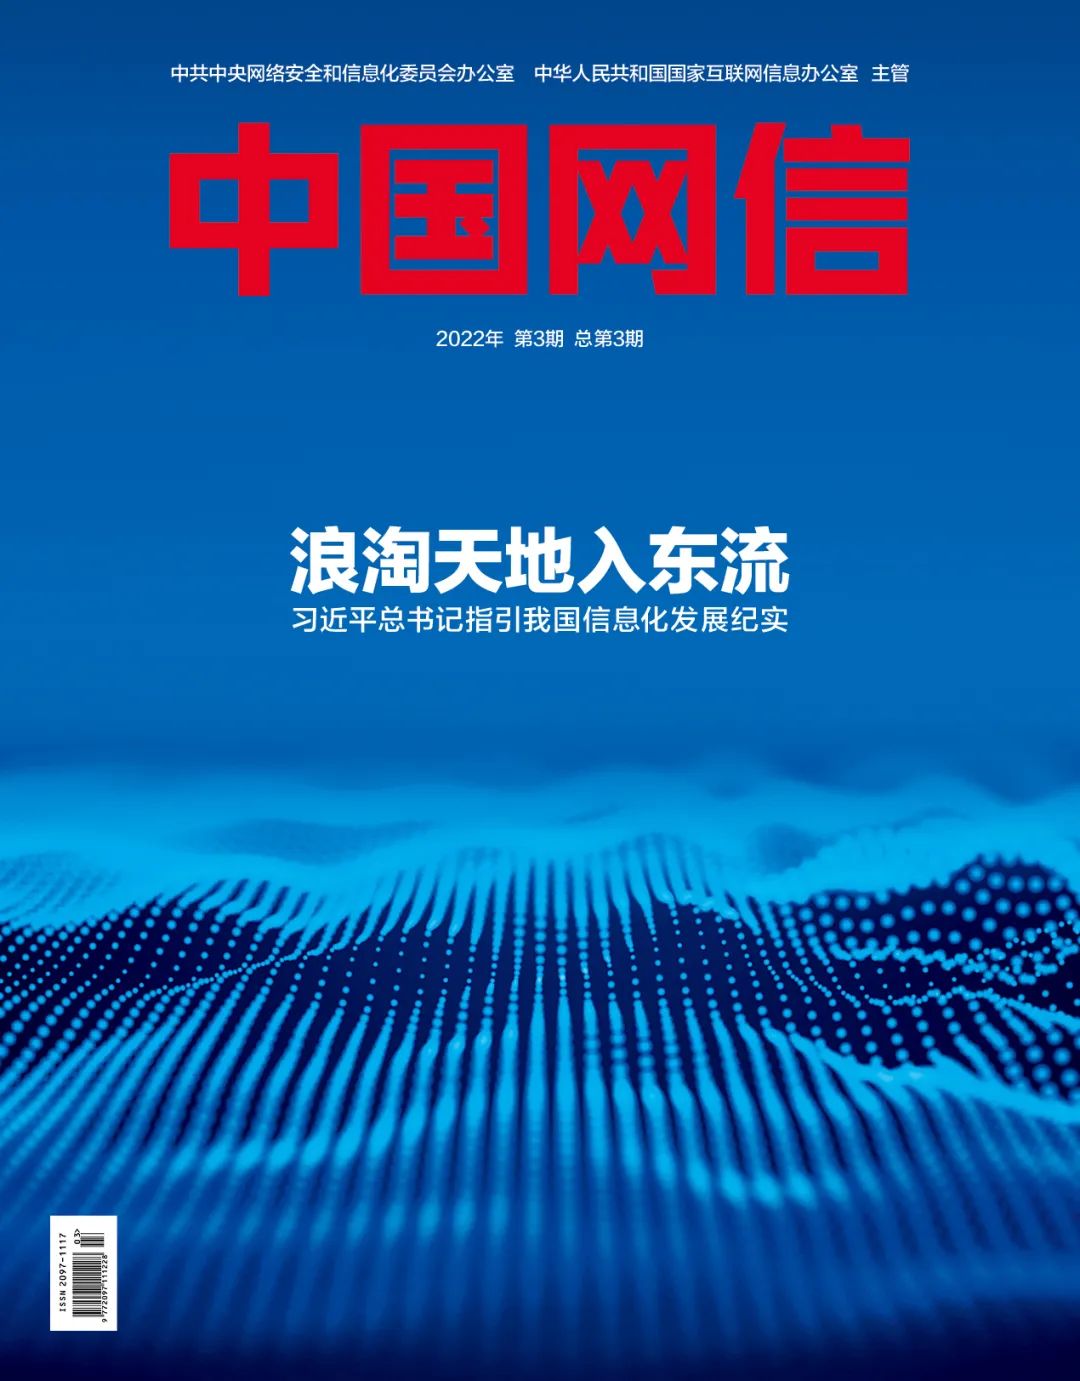 《中国网信》杂志发表《习近平总书记指引中国信息化发展纪实》